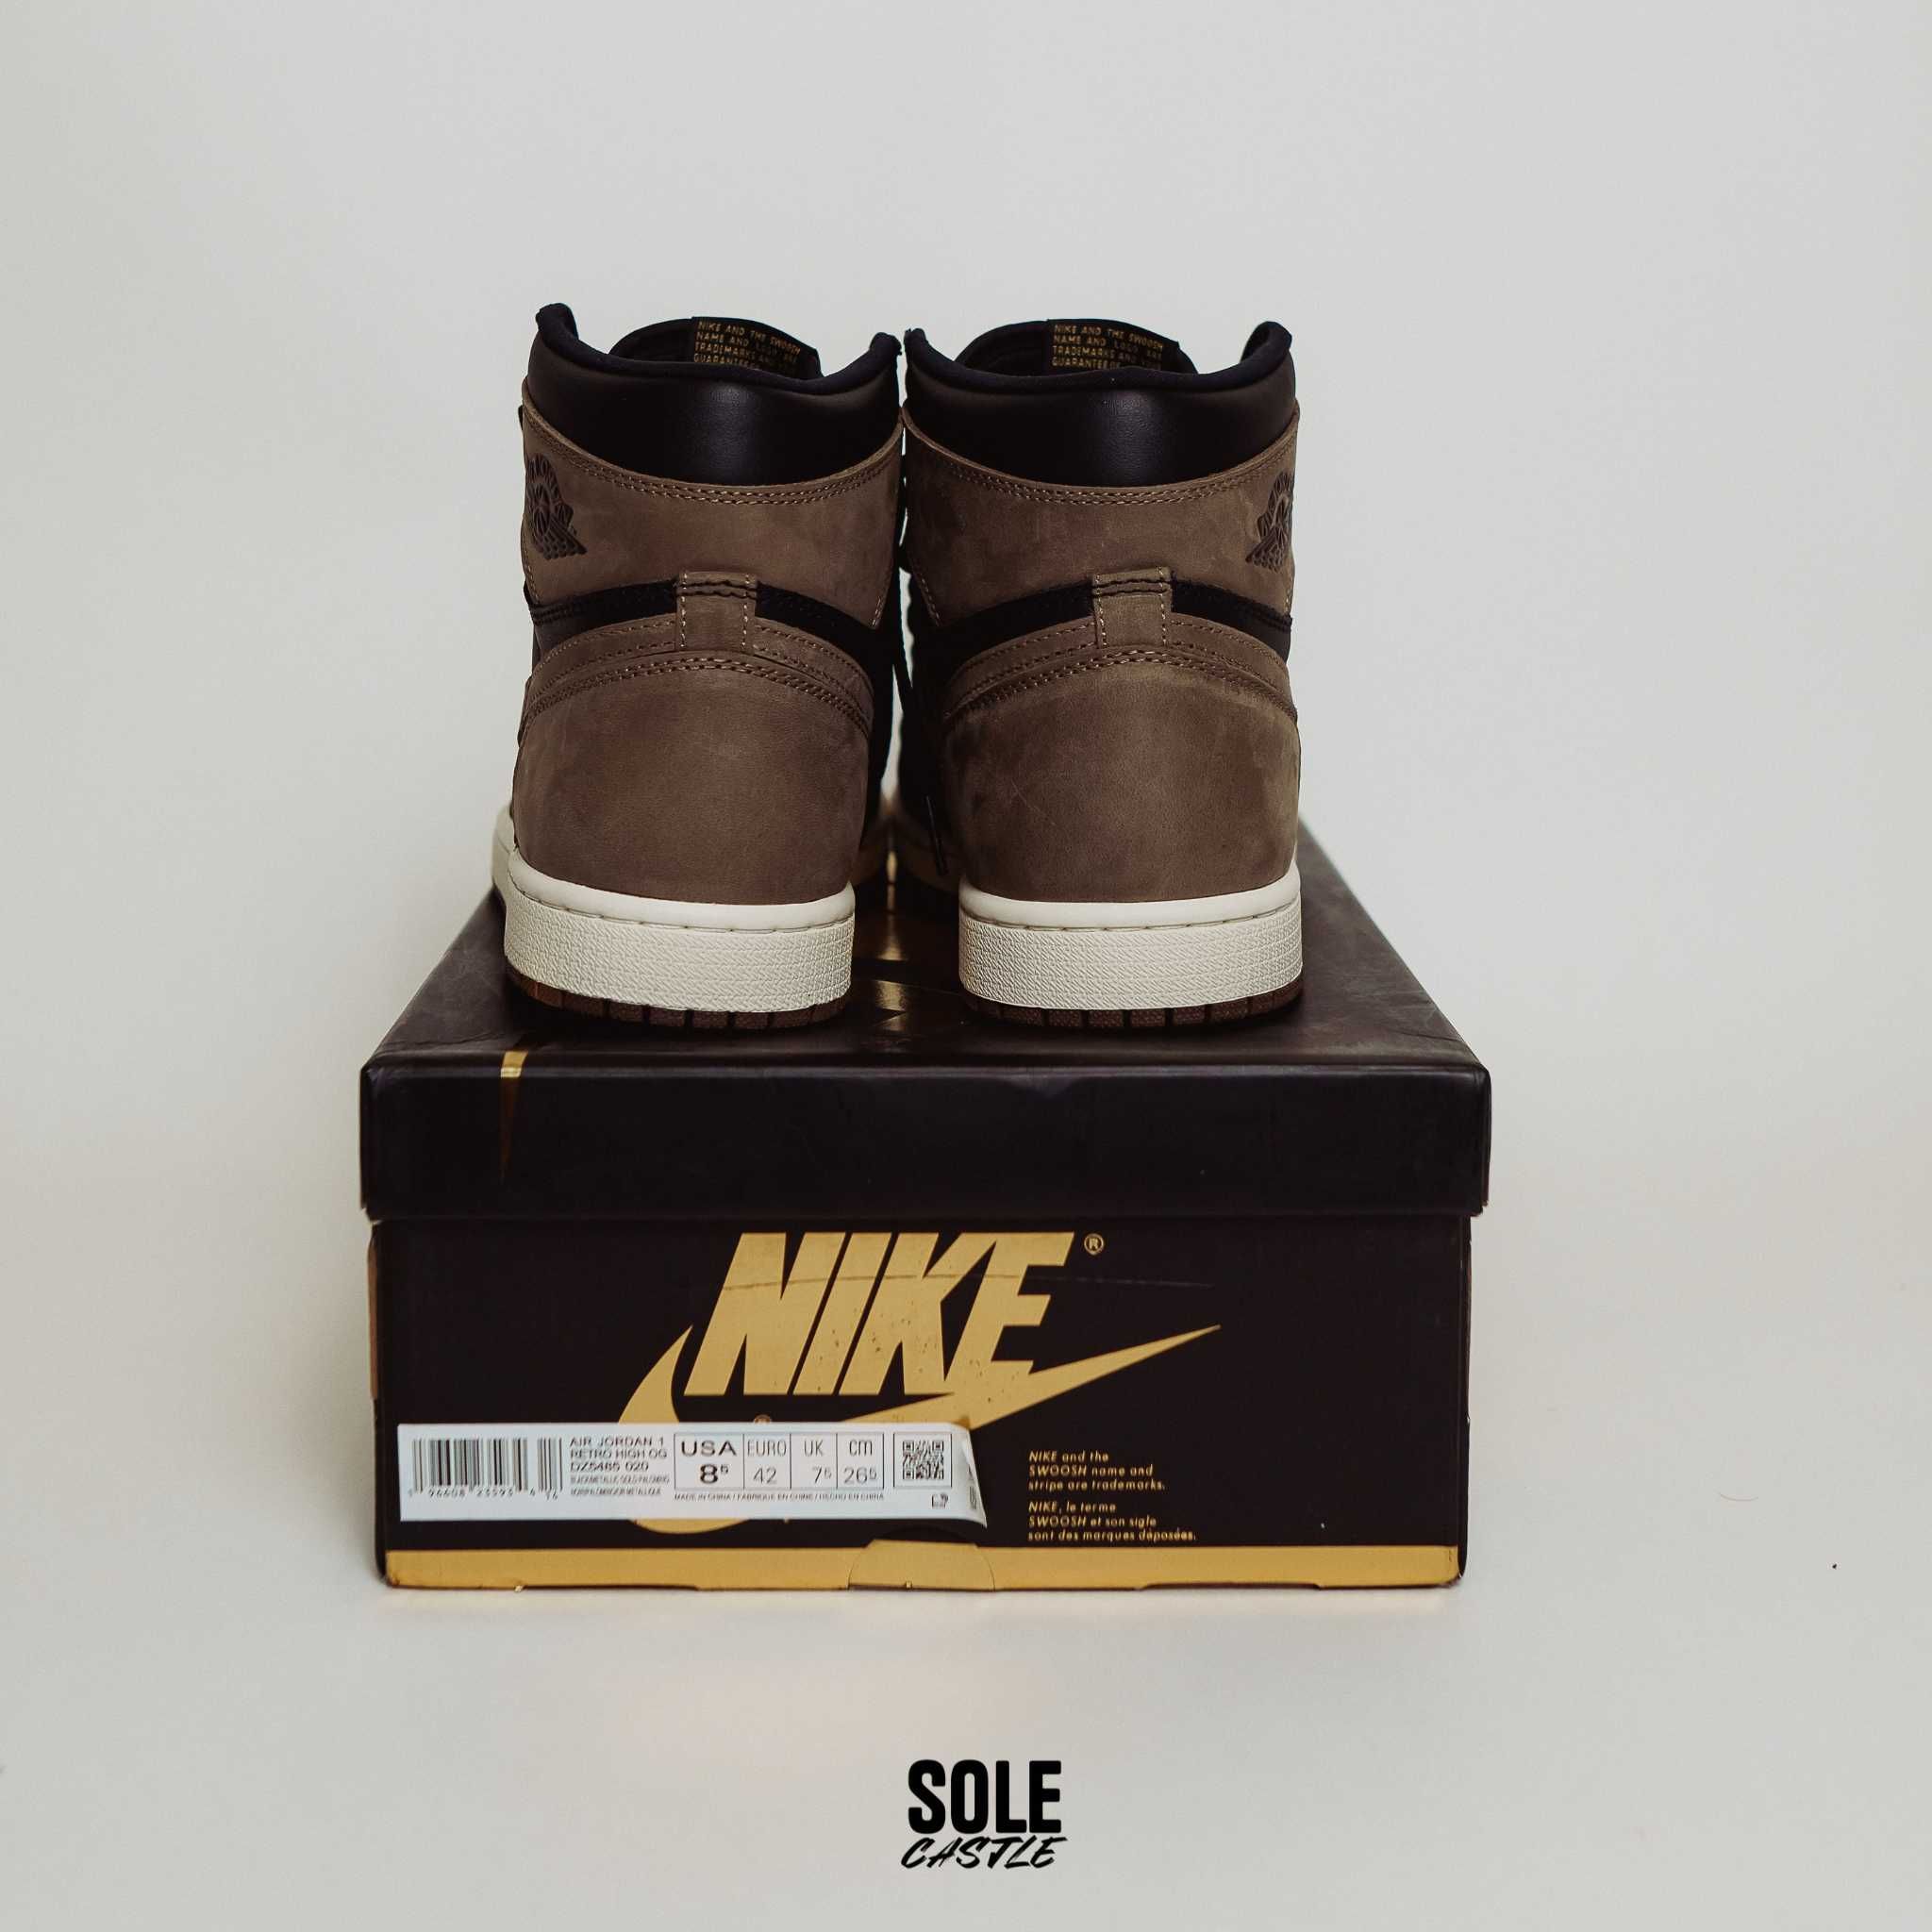 Nike Air Jordan 1 High OG "Palomino" (nu dunk, yeezy sau adidas)